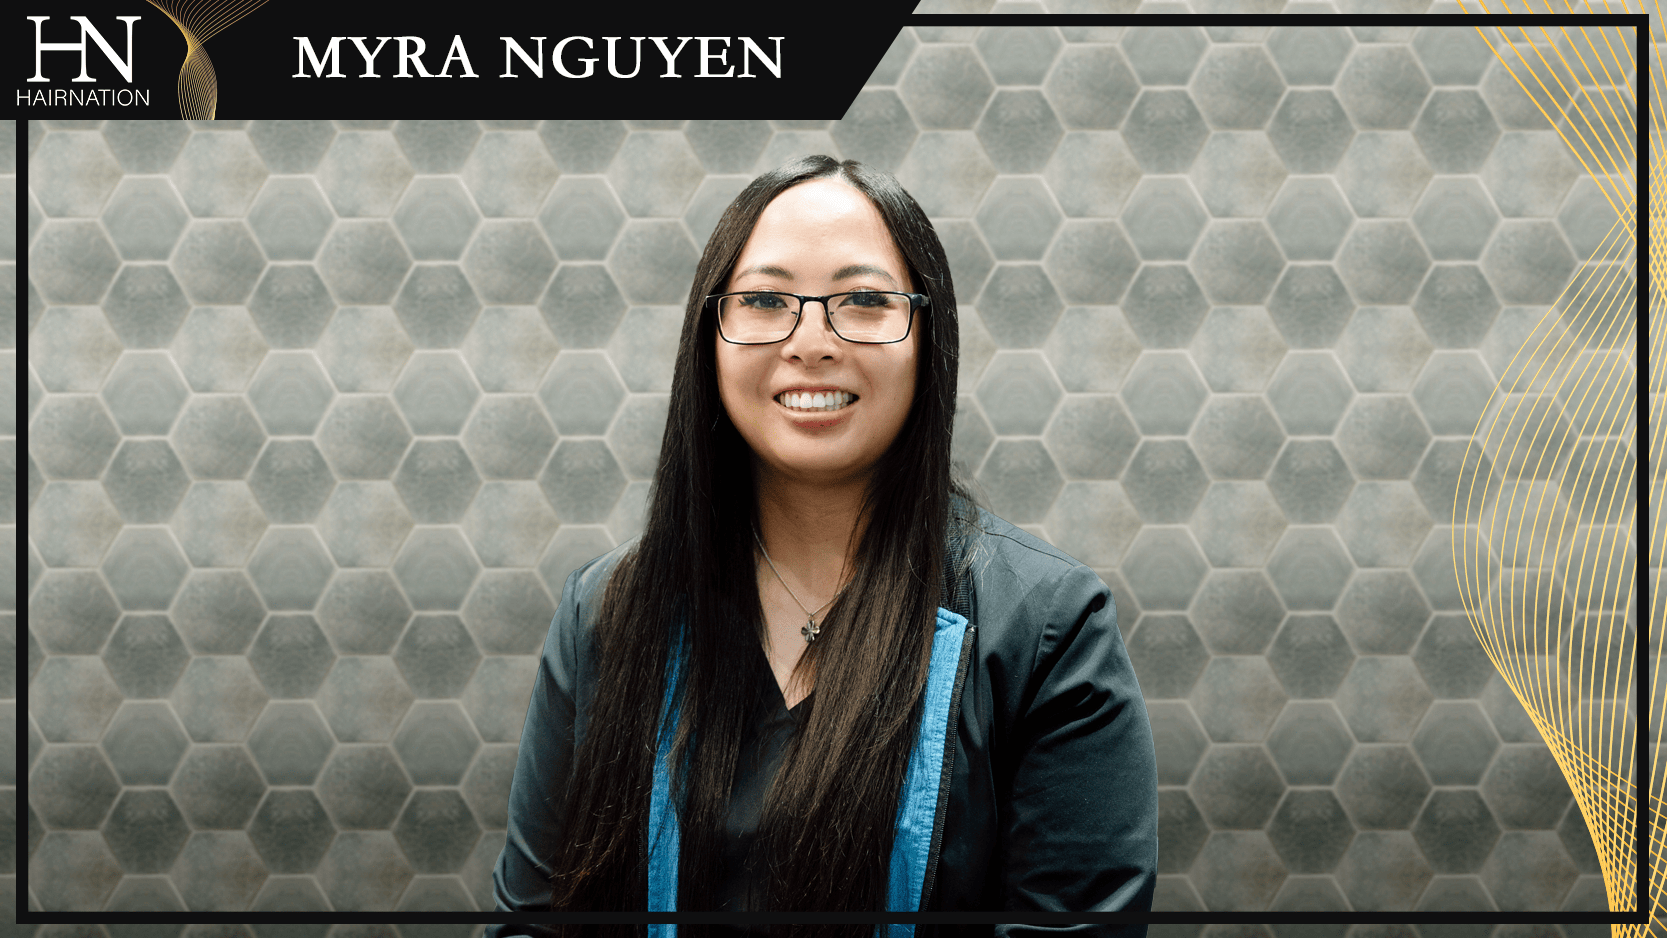 Myra Nguyen